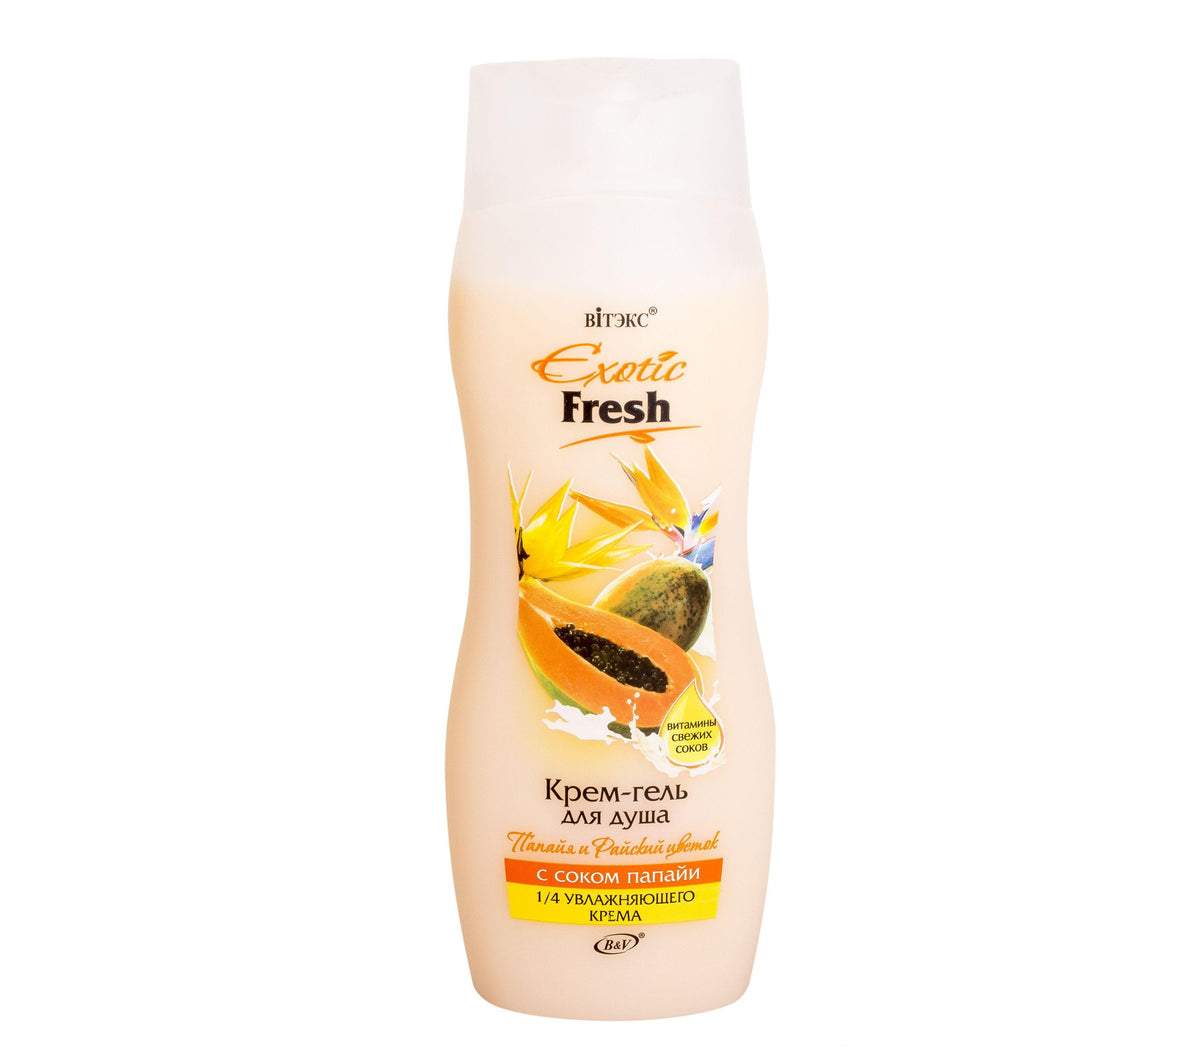 Exotic Fresh Papaya ve Starliçe Çiçeği Aromalı Duş Jeli (515 ml) | Auraline Cosmetics